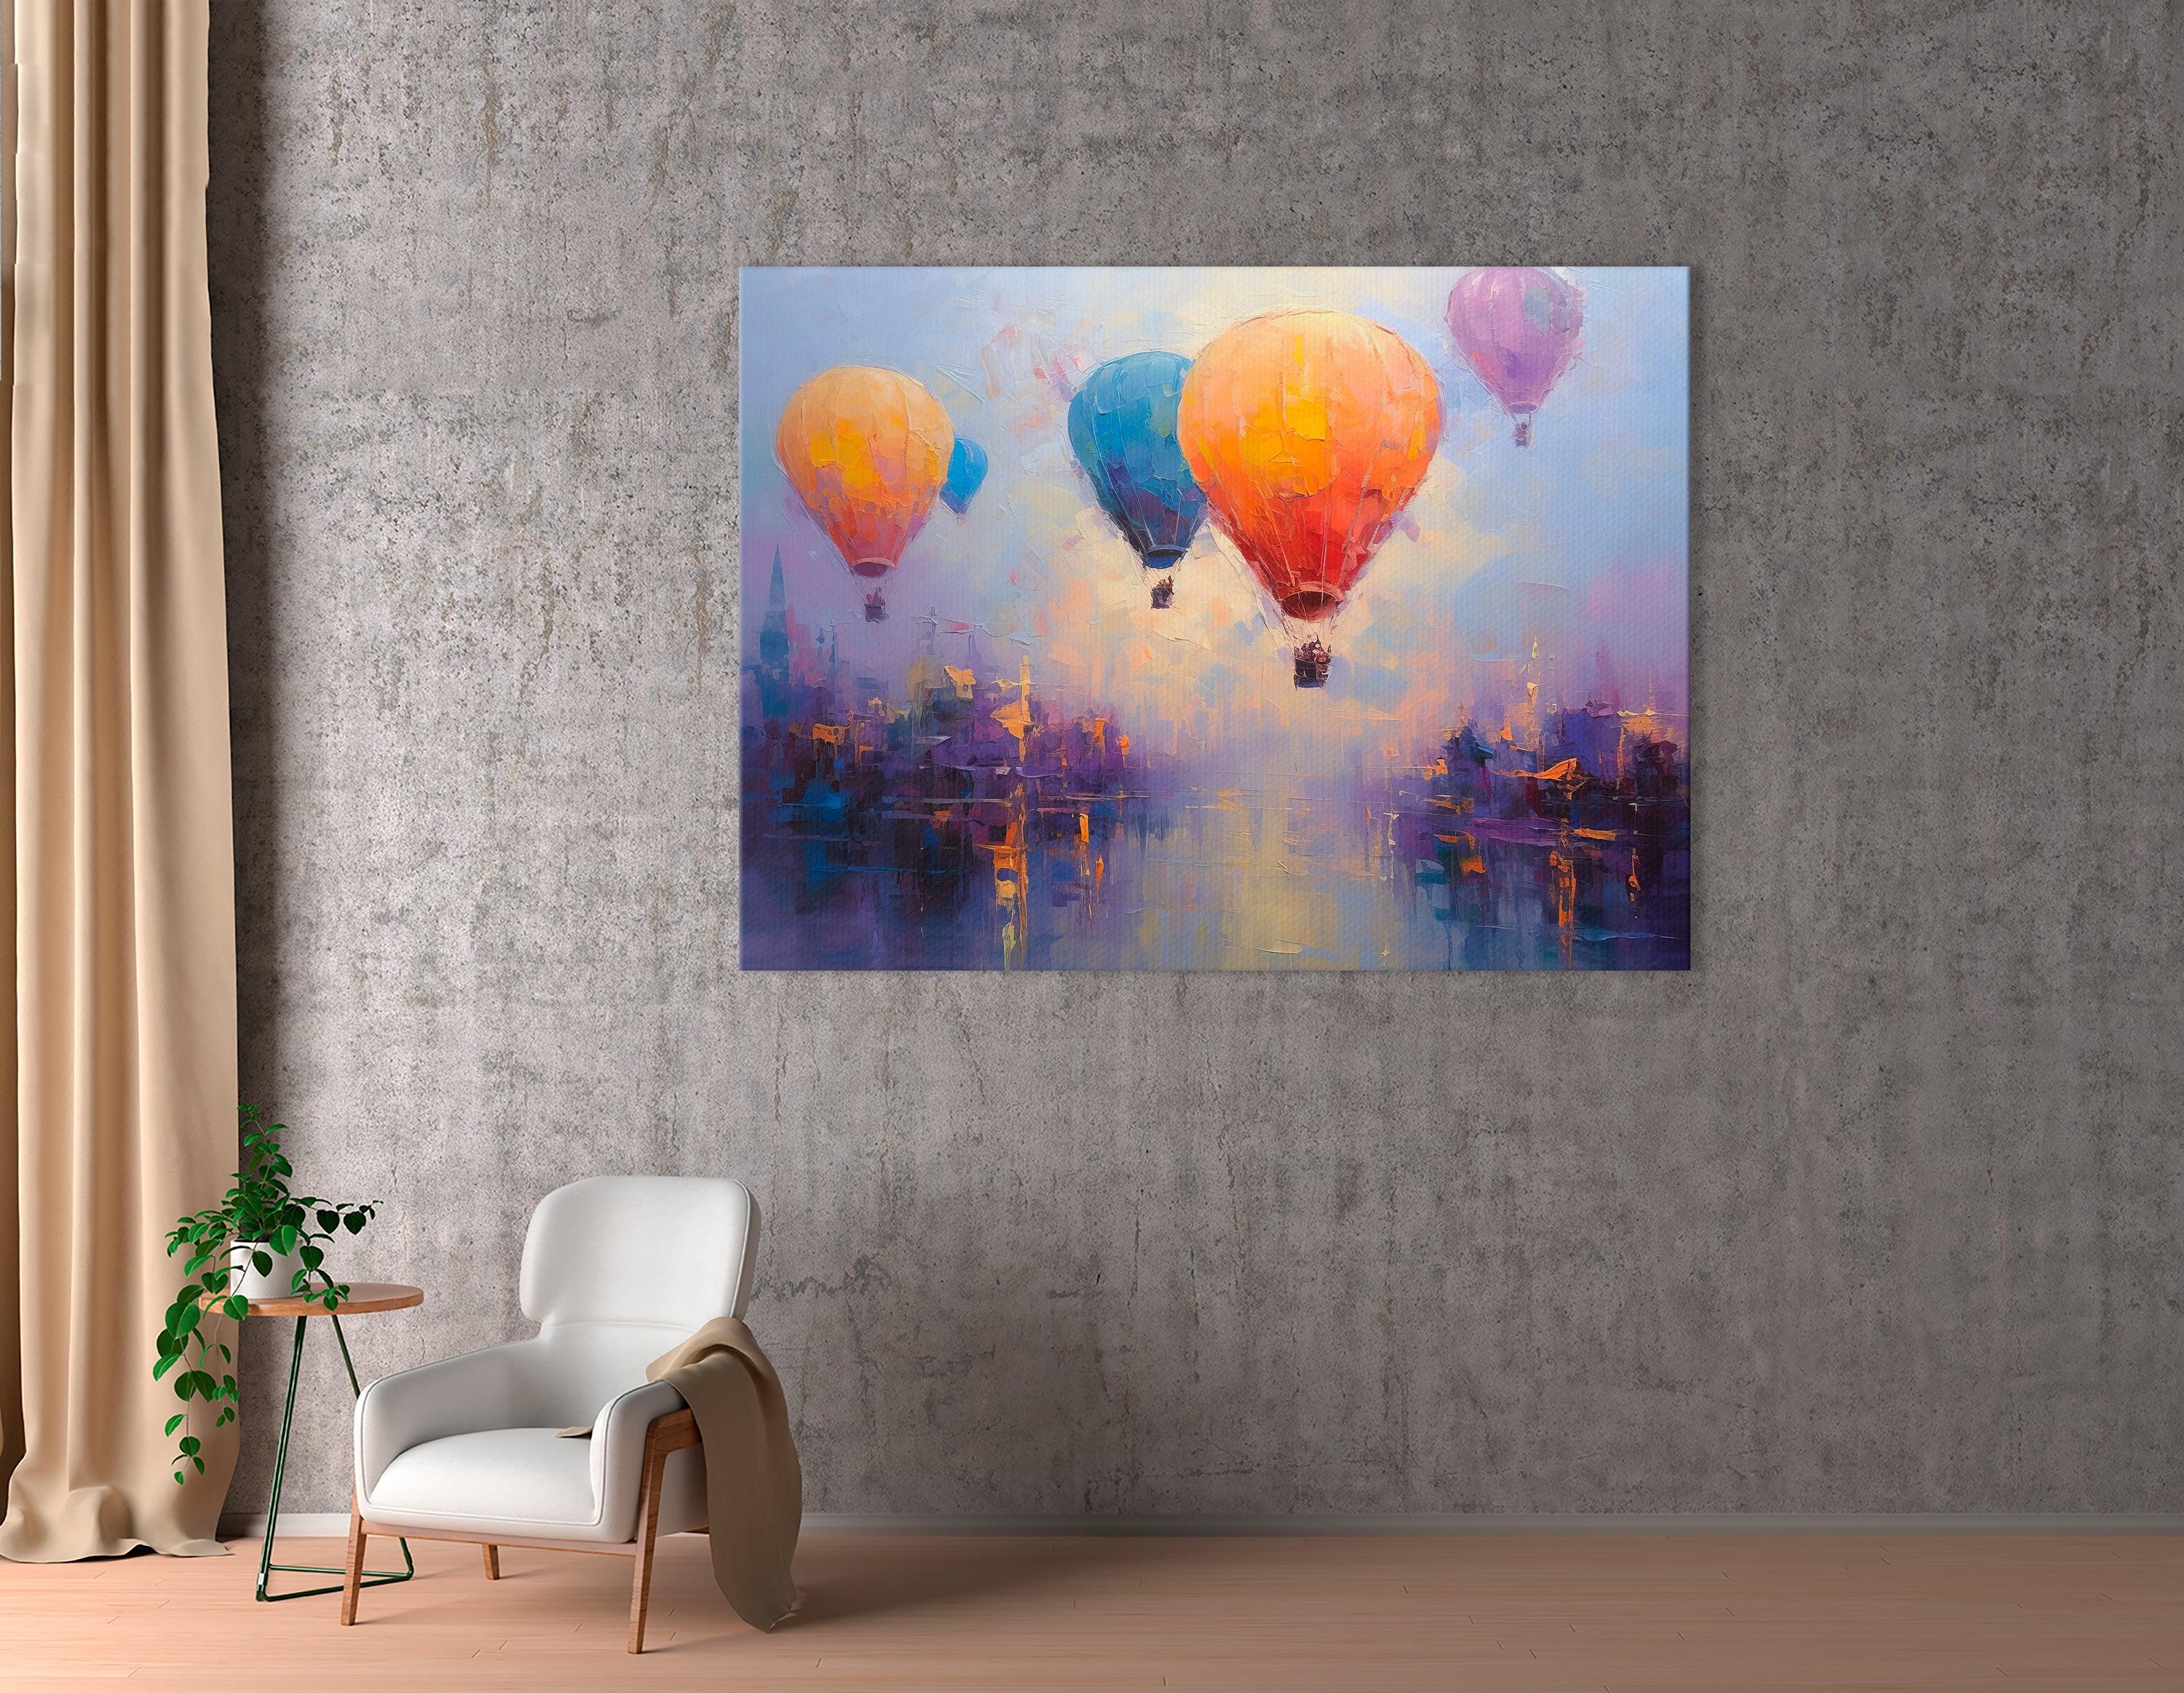 Colorful Hot Air Balloons Over Cappadocia - Canvas Print - Artoholica Ready to Hang Canvas Print